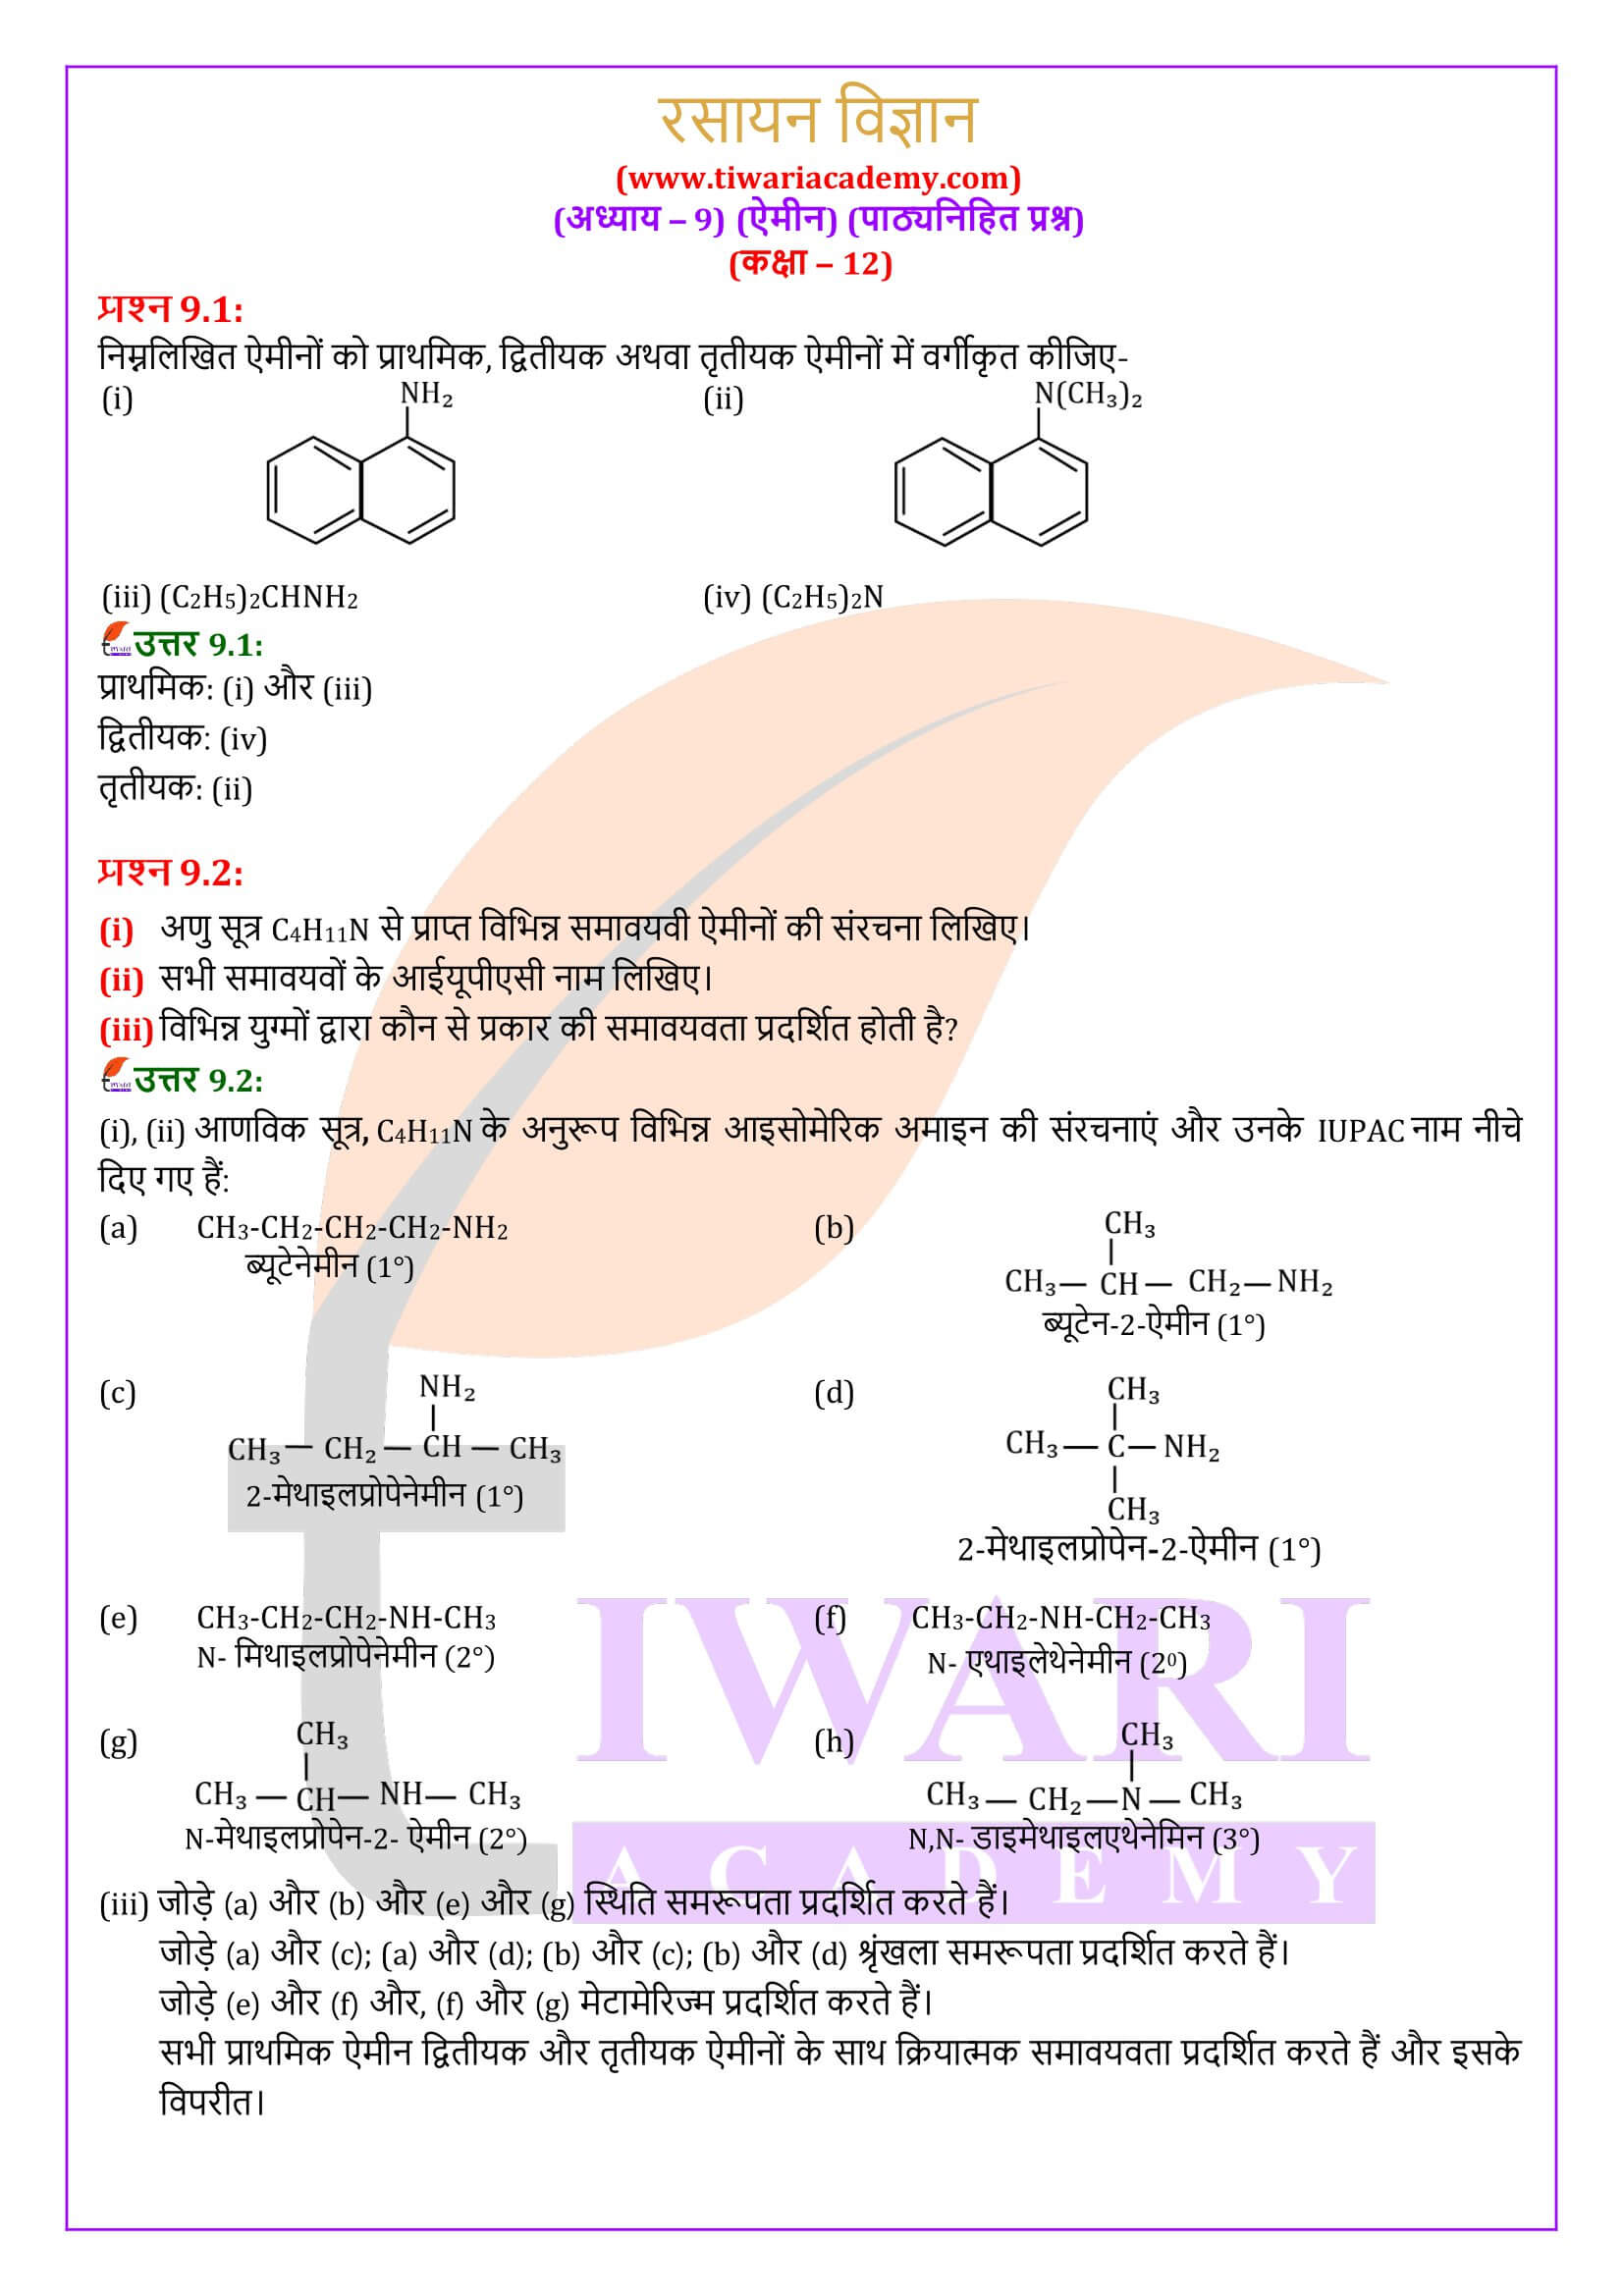 कक्षा 12 रसायन विज्ञान अध्याय 9 पाठ्यनिहित